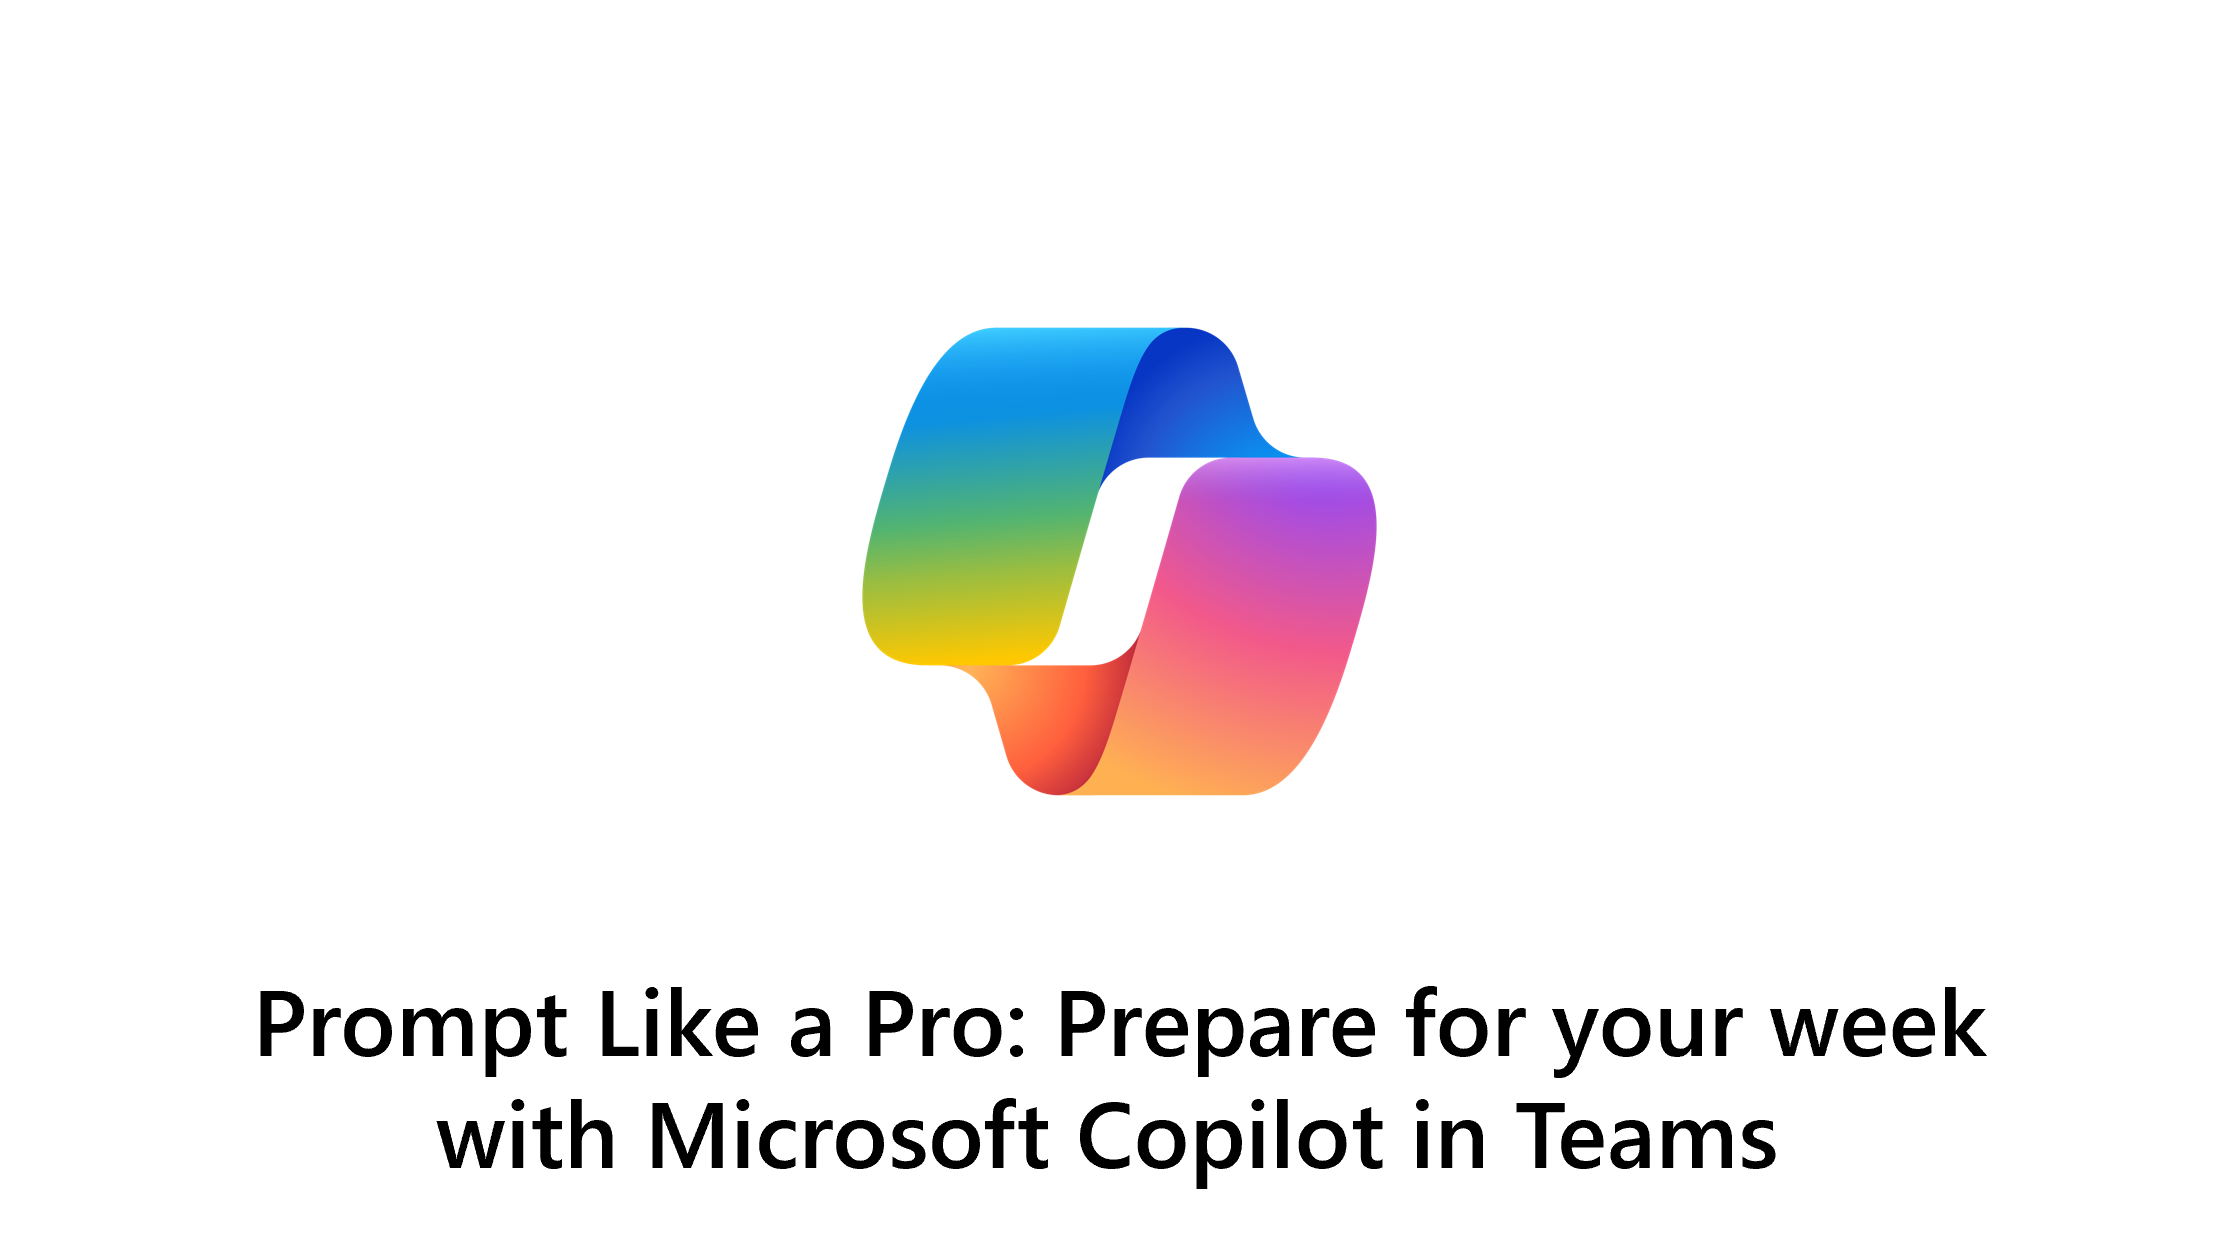 Prompt wie ein Profi: Bereiten Sie sich mit Microsoft Copilot in Teams auf Ihre Woche vor